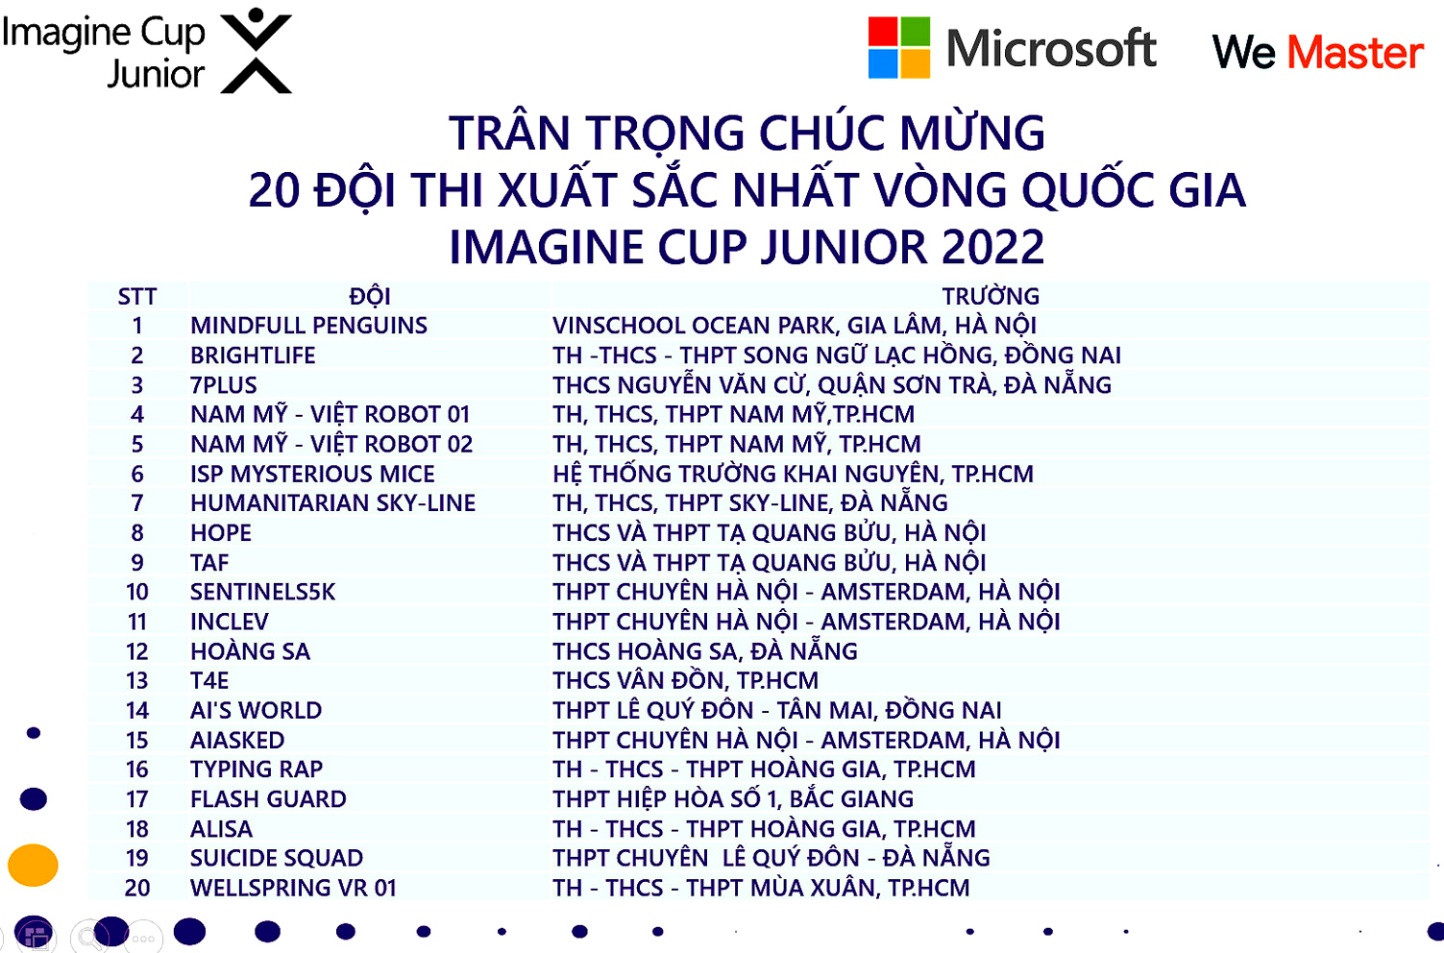 20 ý tưởng sáng tạo ứng dụng AI xuất sắc nhất của học sinh Việt Nam - Ảnh 1.